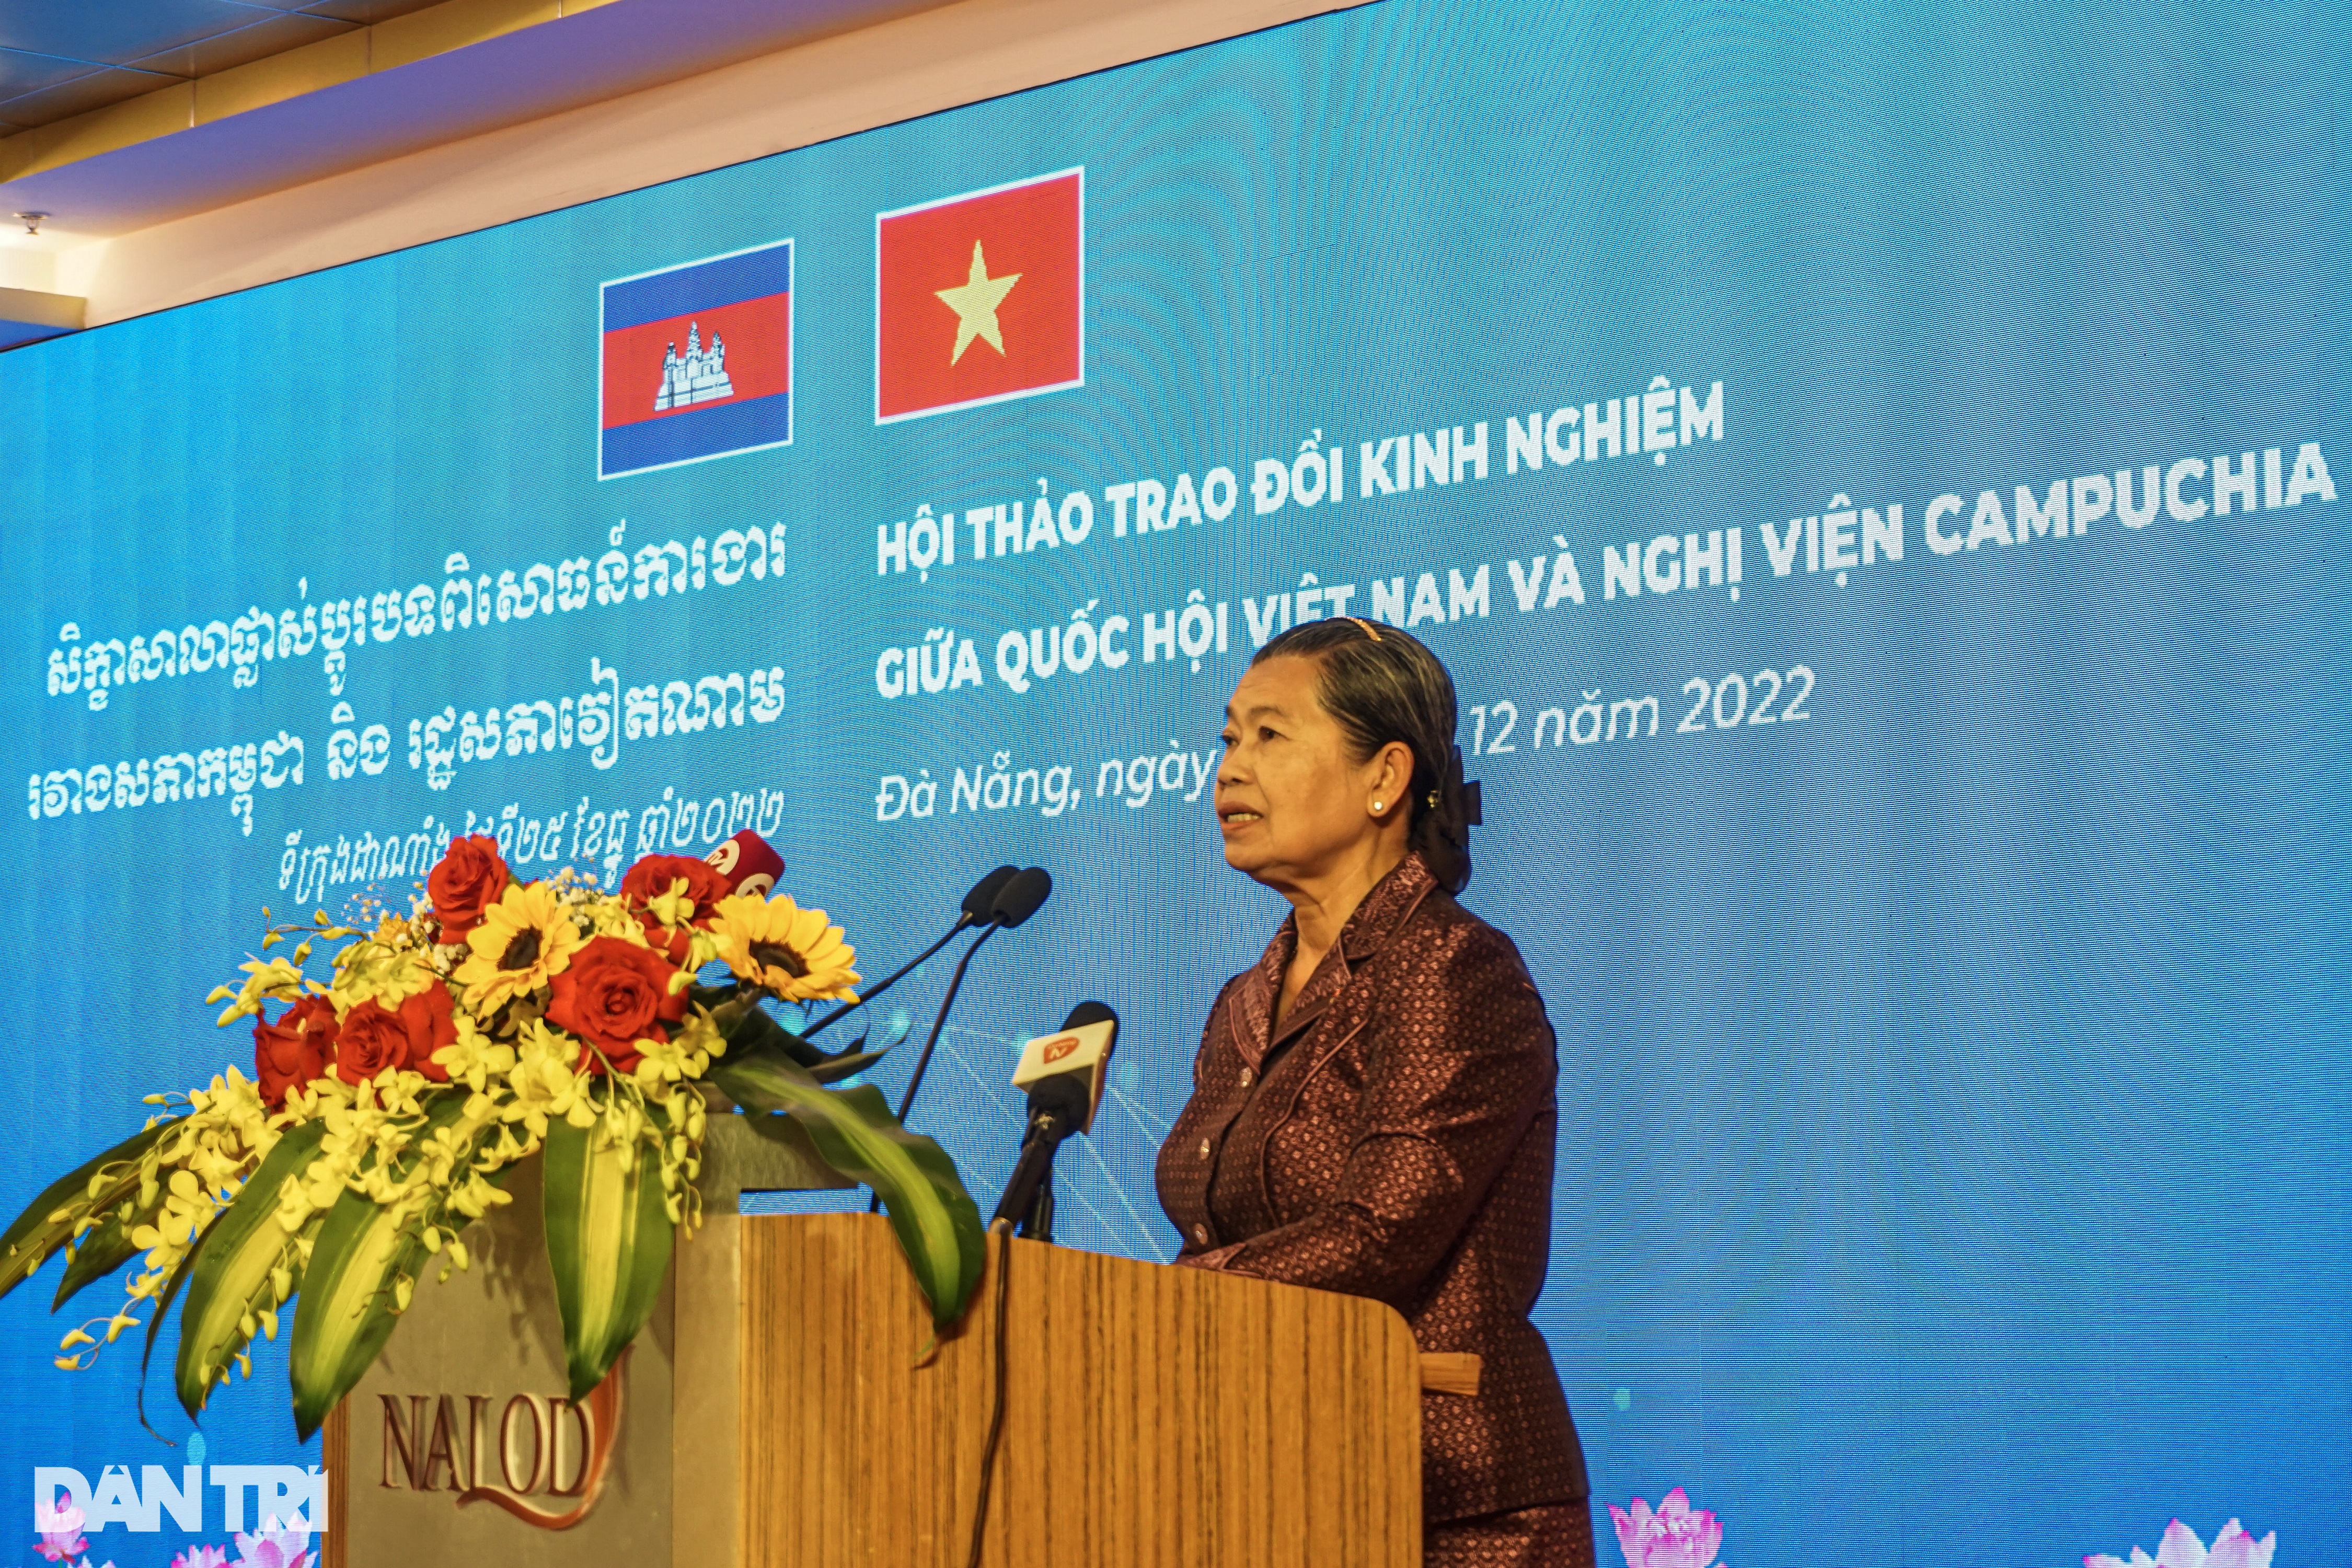 Thúc đẩy hợp tác giữa Quốc hội Việt Nam và Nghị viện Campuchia - 3